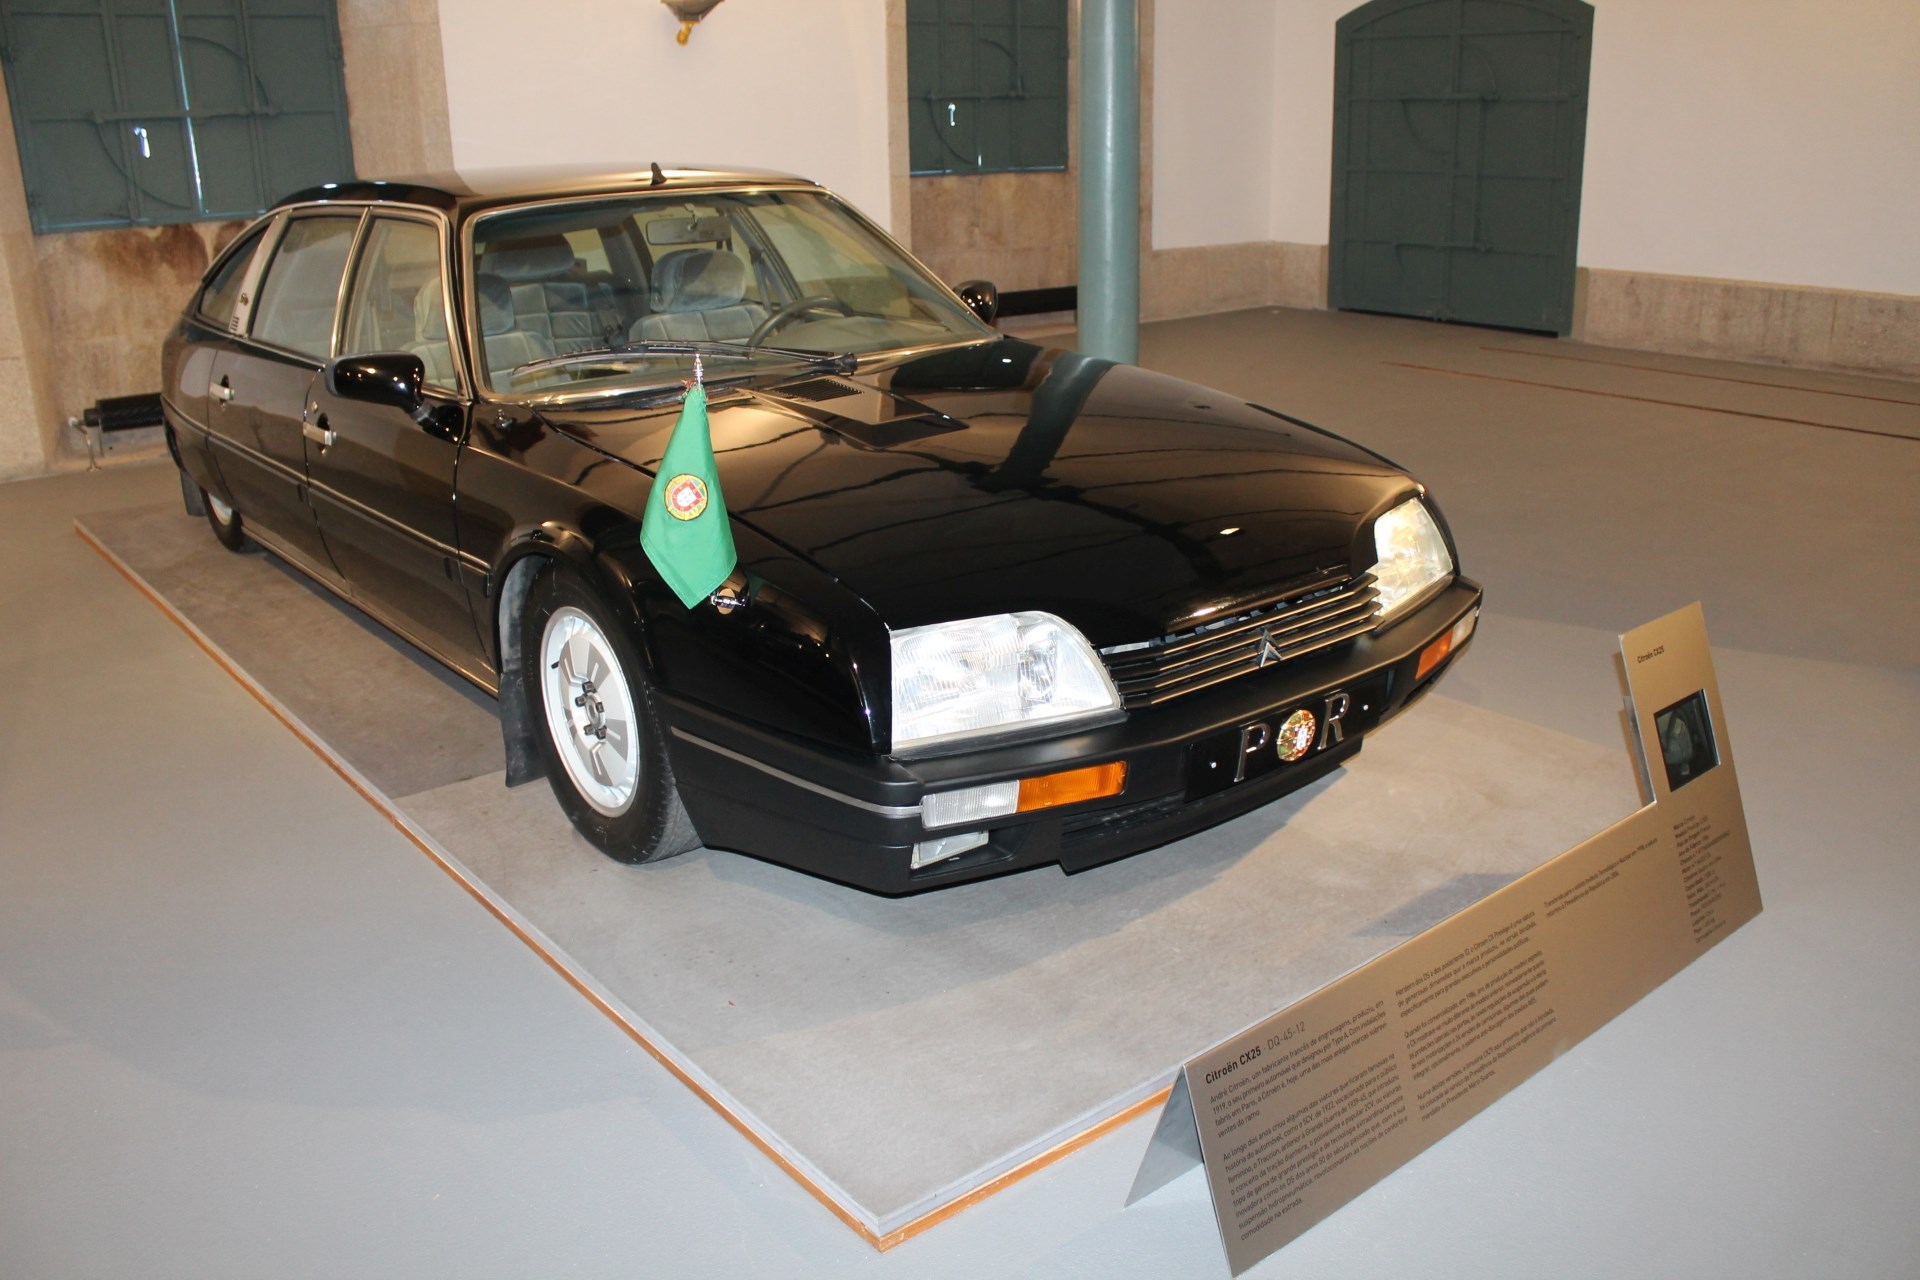 Citroën CX25 Prestige, pertencente à coleção da Presidência da República, em exposição na Alfândega do Porto.